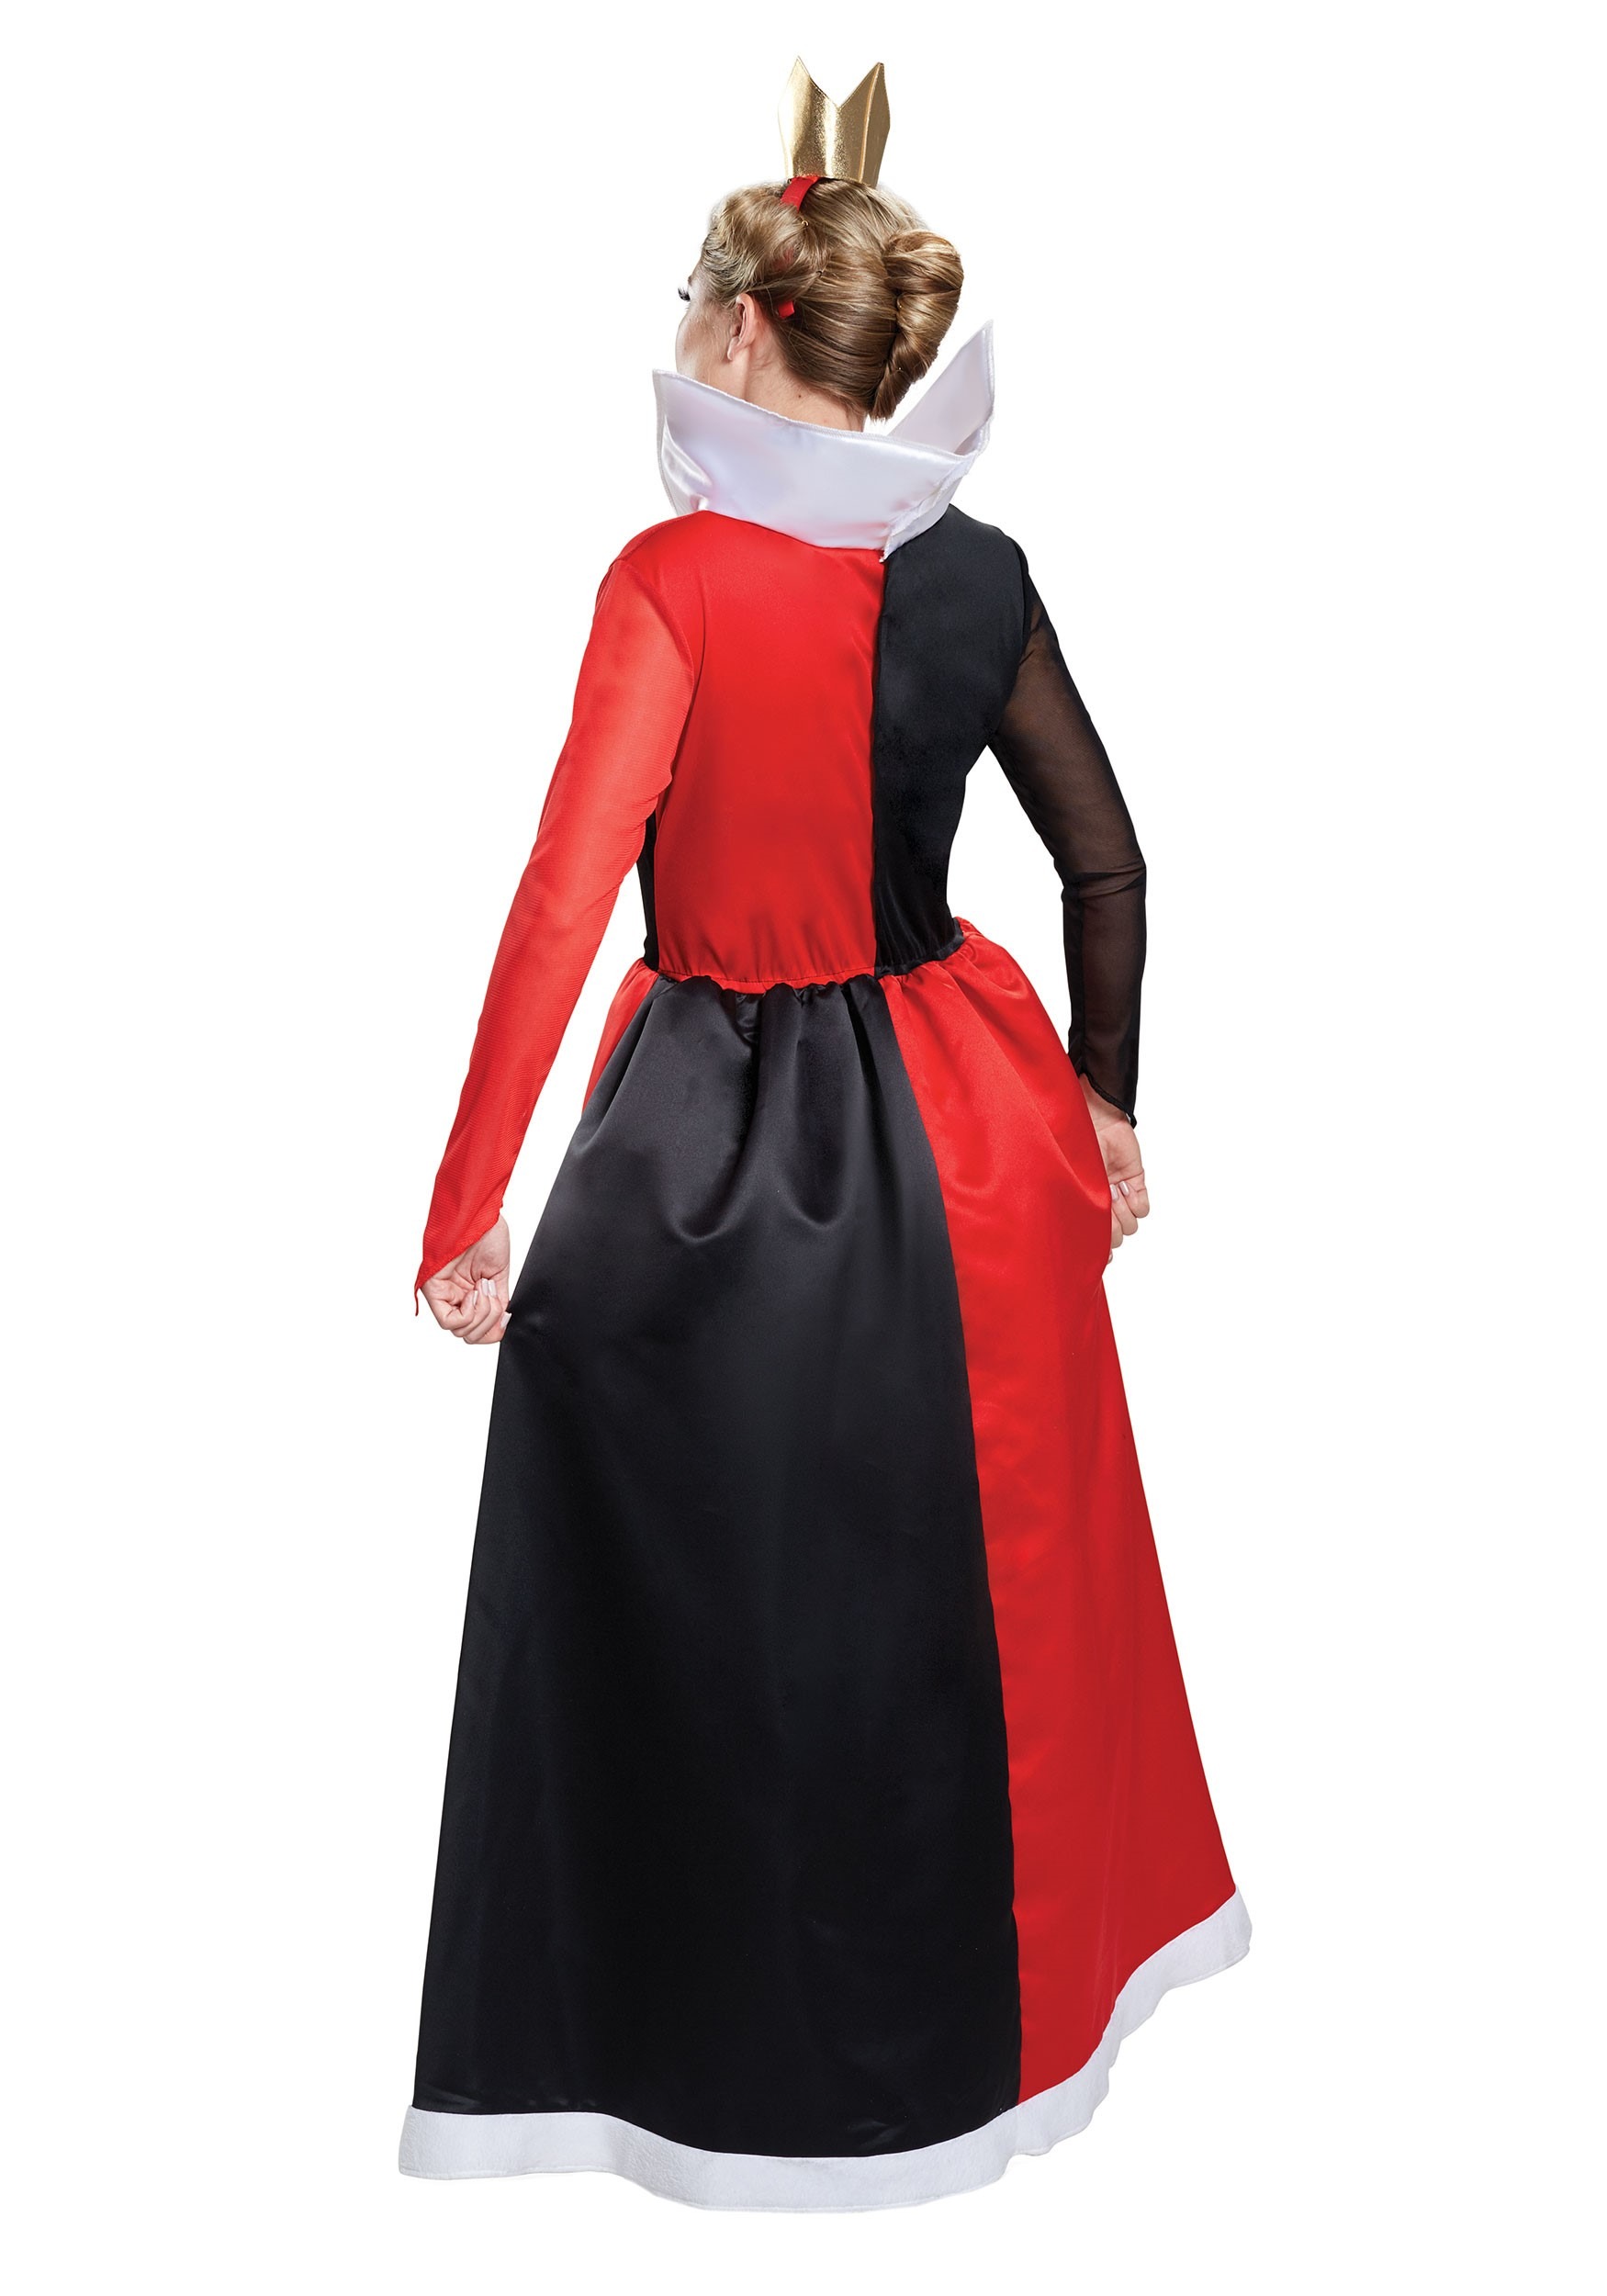 Disney Villains Queen of Hearts Deluxe Adult Halloween Costume, Red/Black, XL